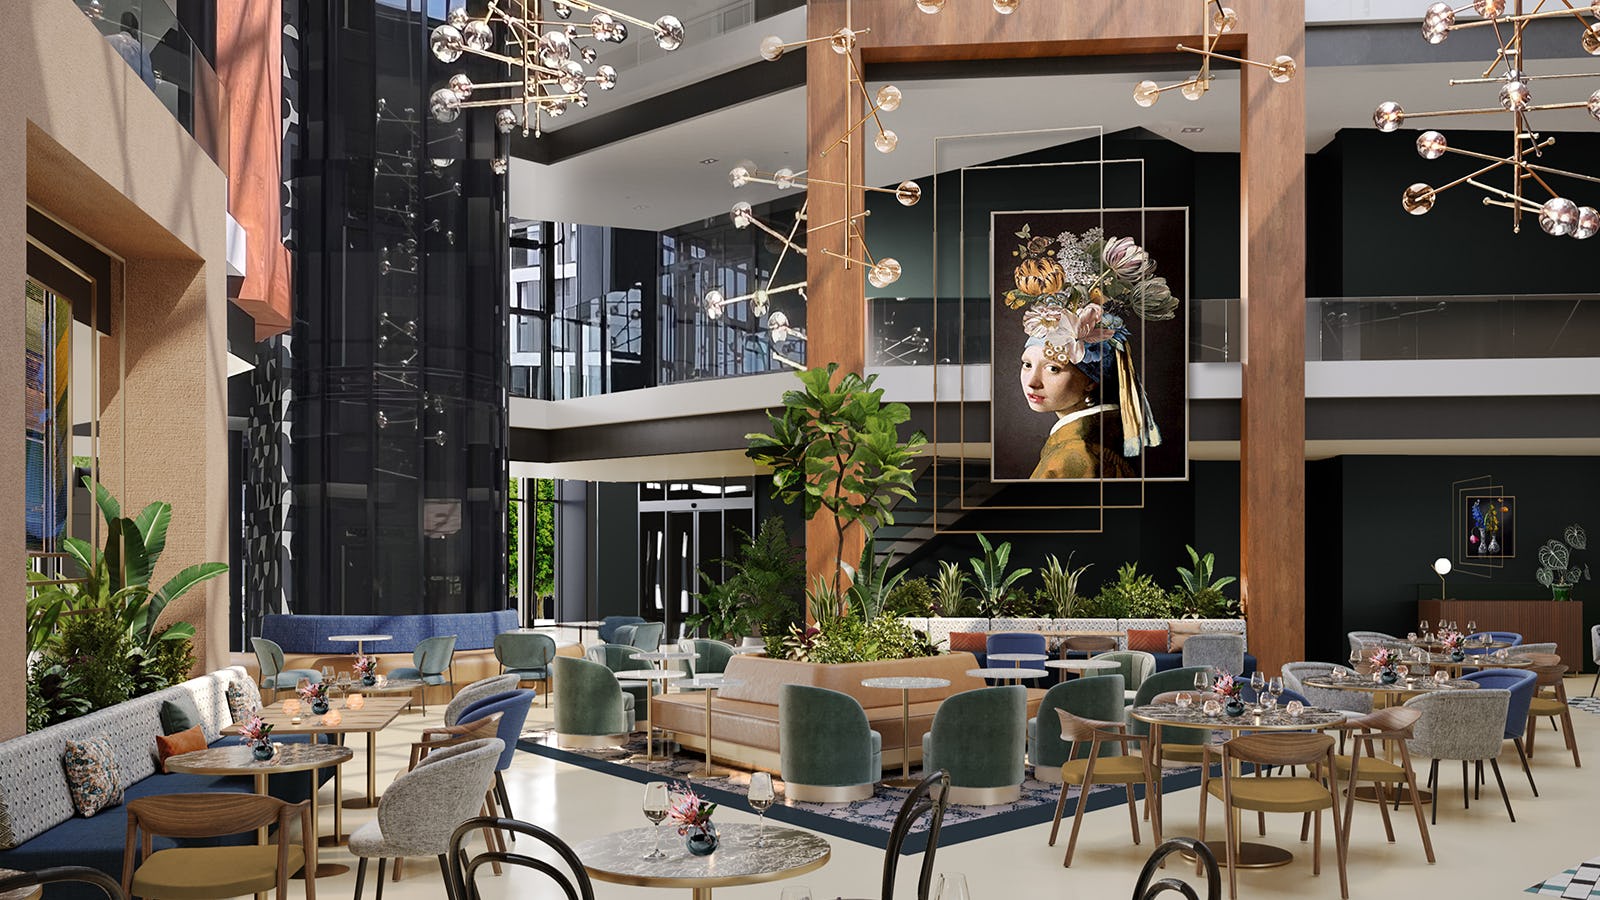 Corendon opent op Schiphol tweede Marriott Tribute hotel dit jaar